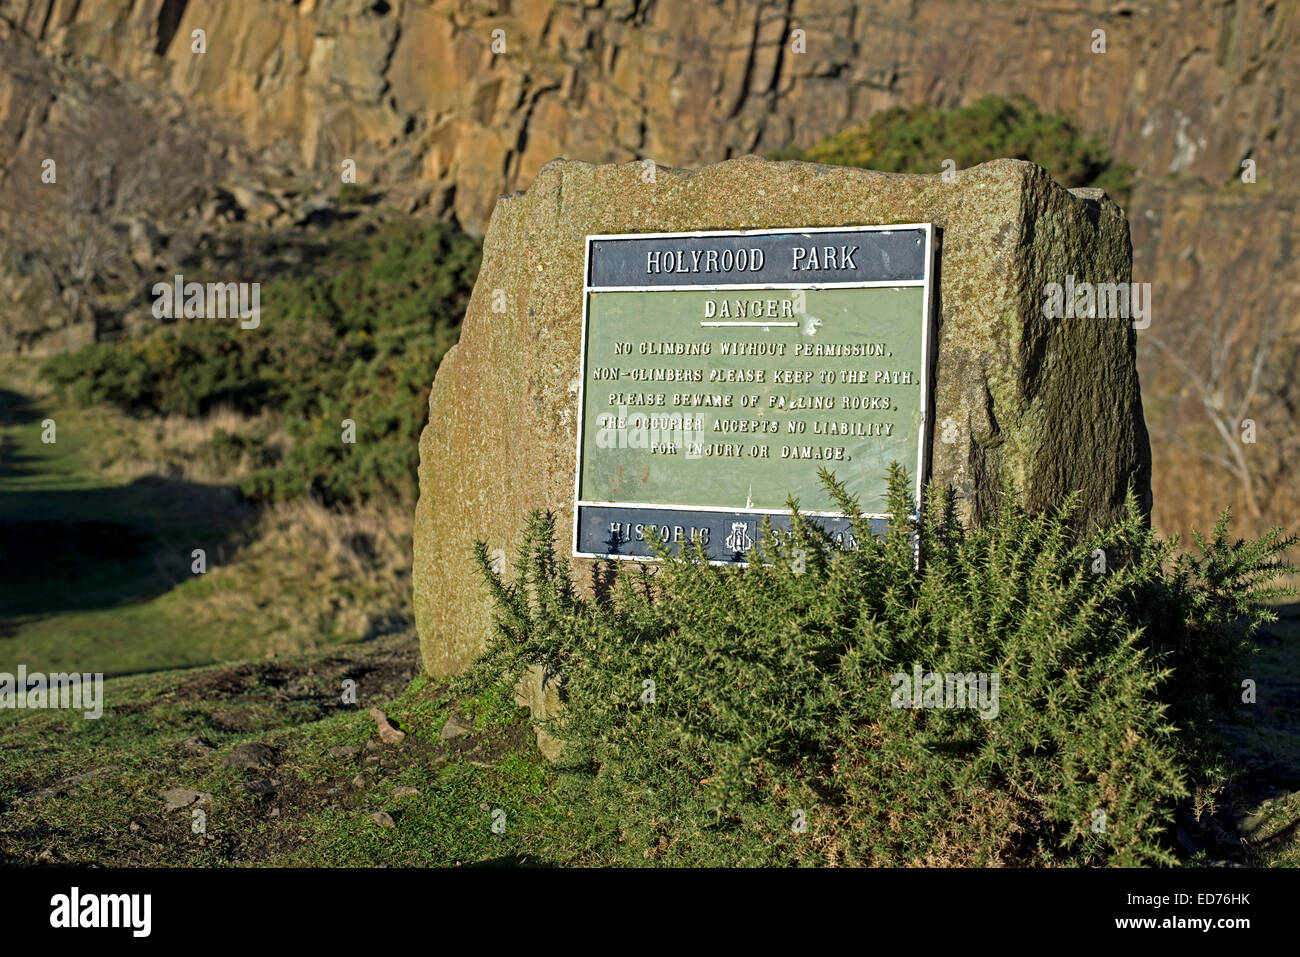 Un signe dans le parc Holyrood Edinburgh nous avertissent des dangers de l'escalade à proximité sur Salisbury Crags. Banque D'Images